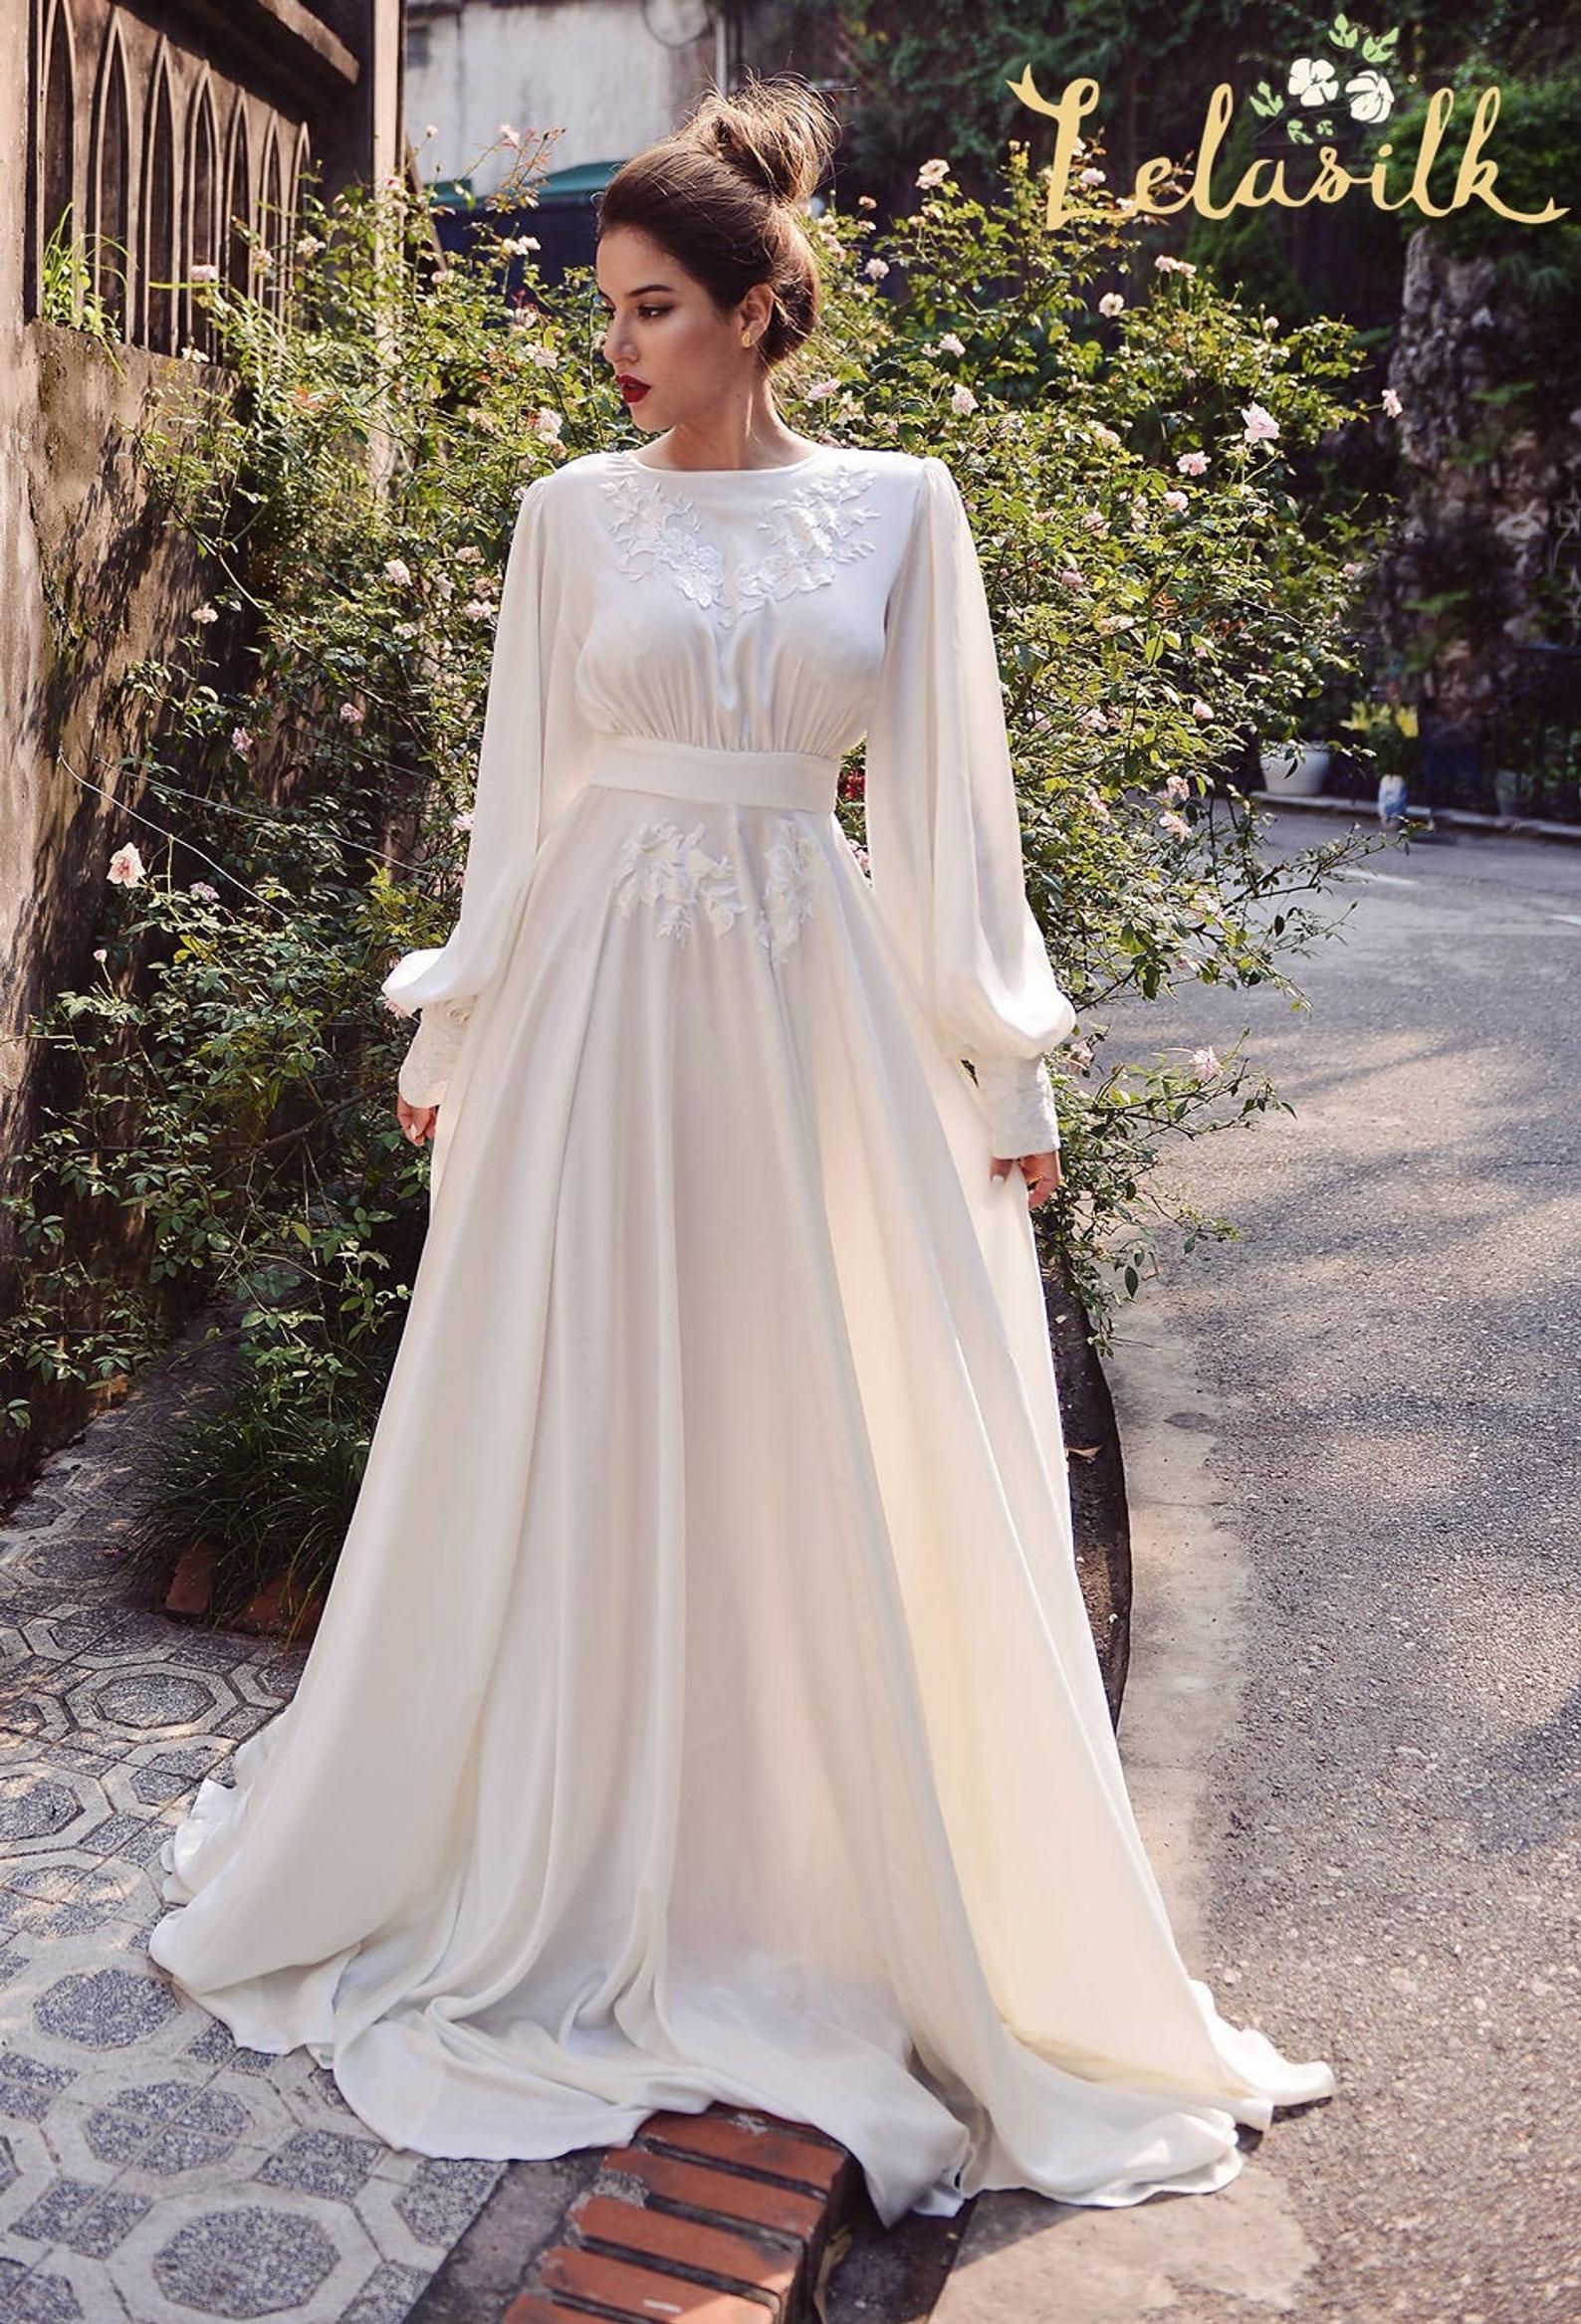 Silk Wedding Dress  Embellished Lace Wedding Dress  Ivory | Etsy -   style Hijab wedding